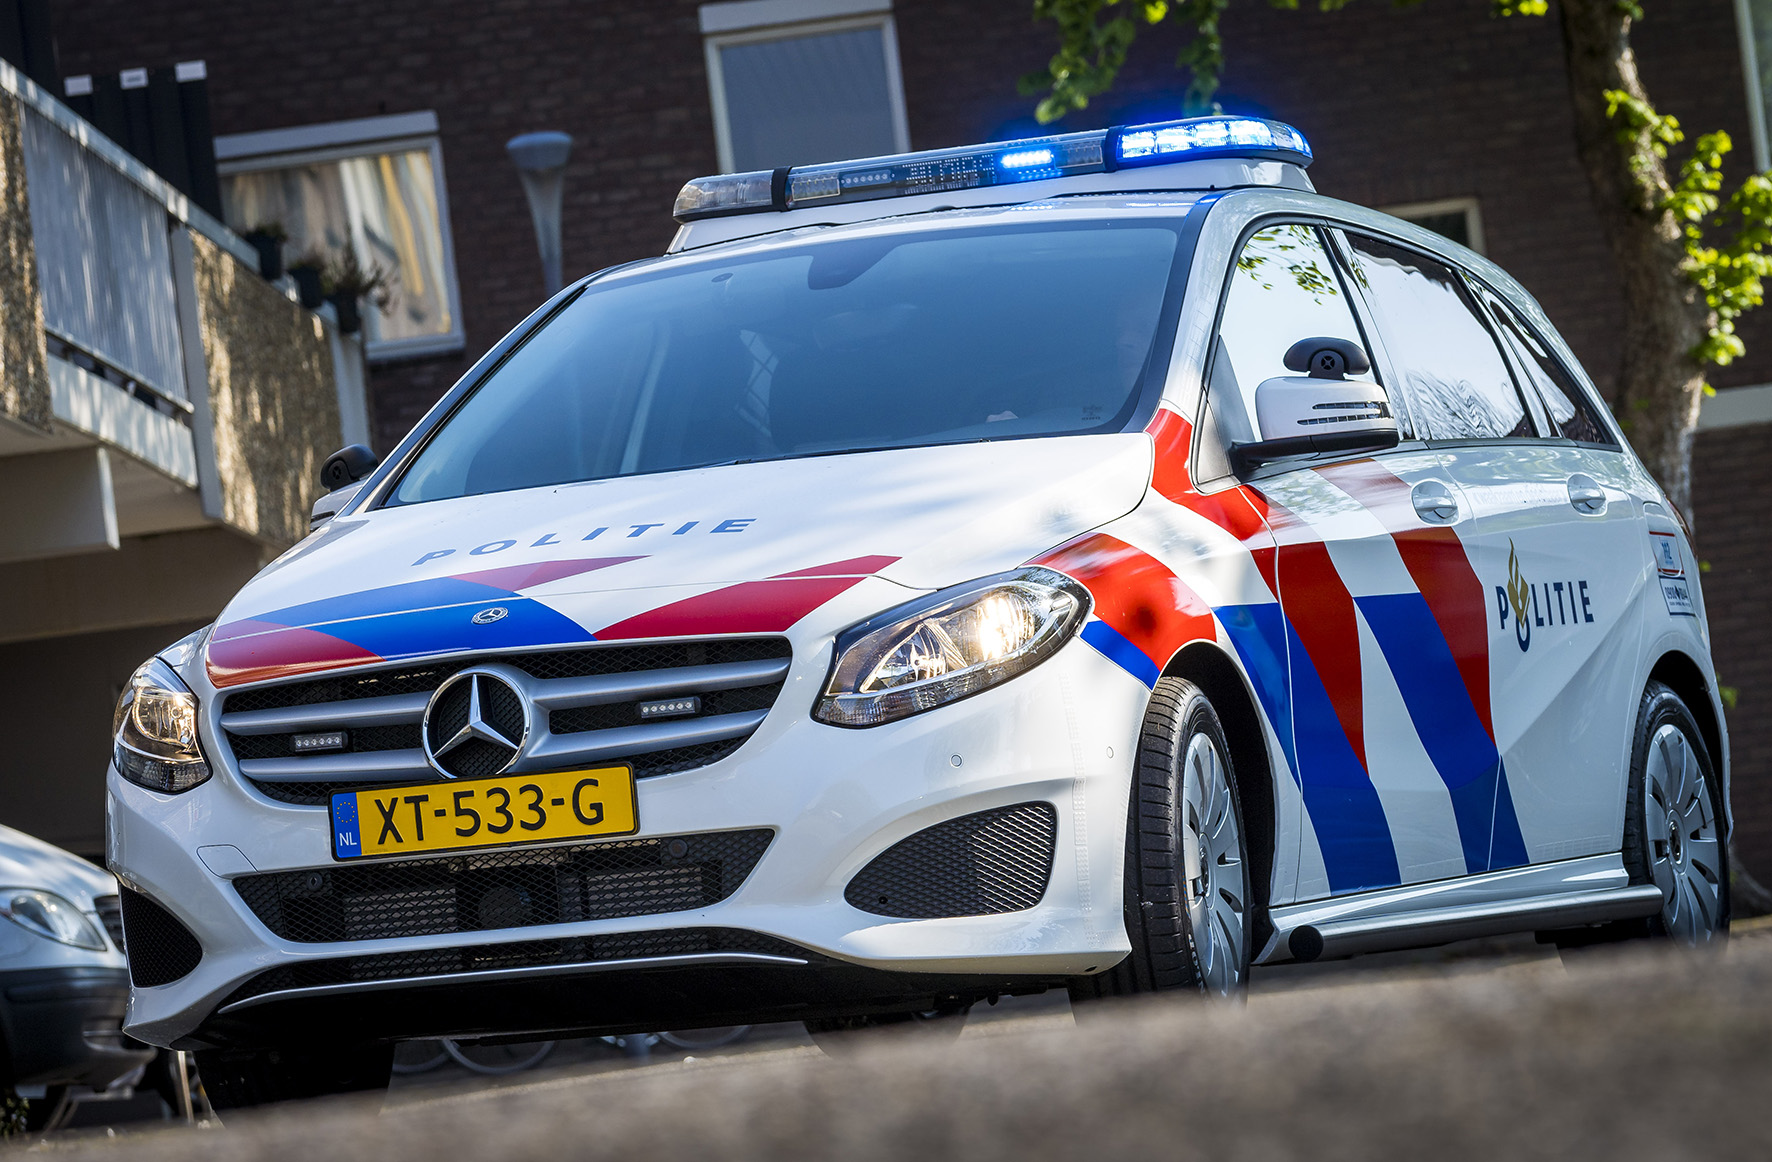 Politie naar de Blokzijlseweg in Scheerwolde vanwege aanrijding met letsel